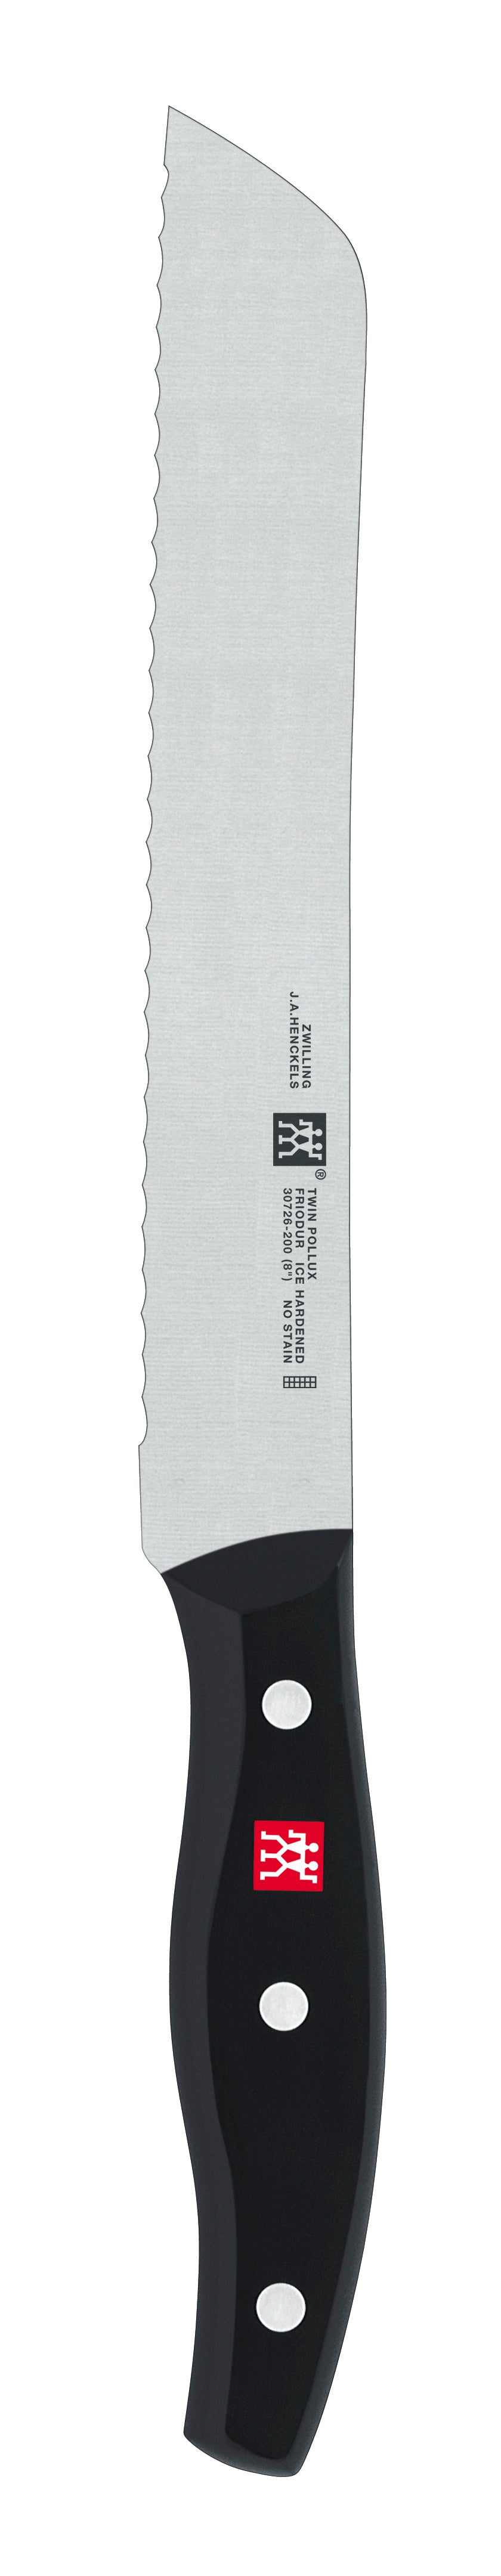 Zwilling TWIN POLLUX Brotmesser mit Wellenschliff, 20 cm